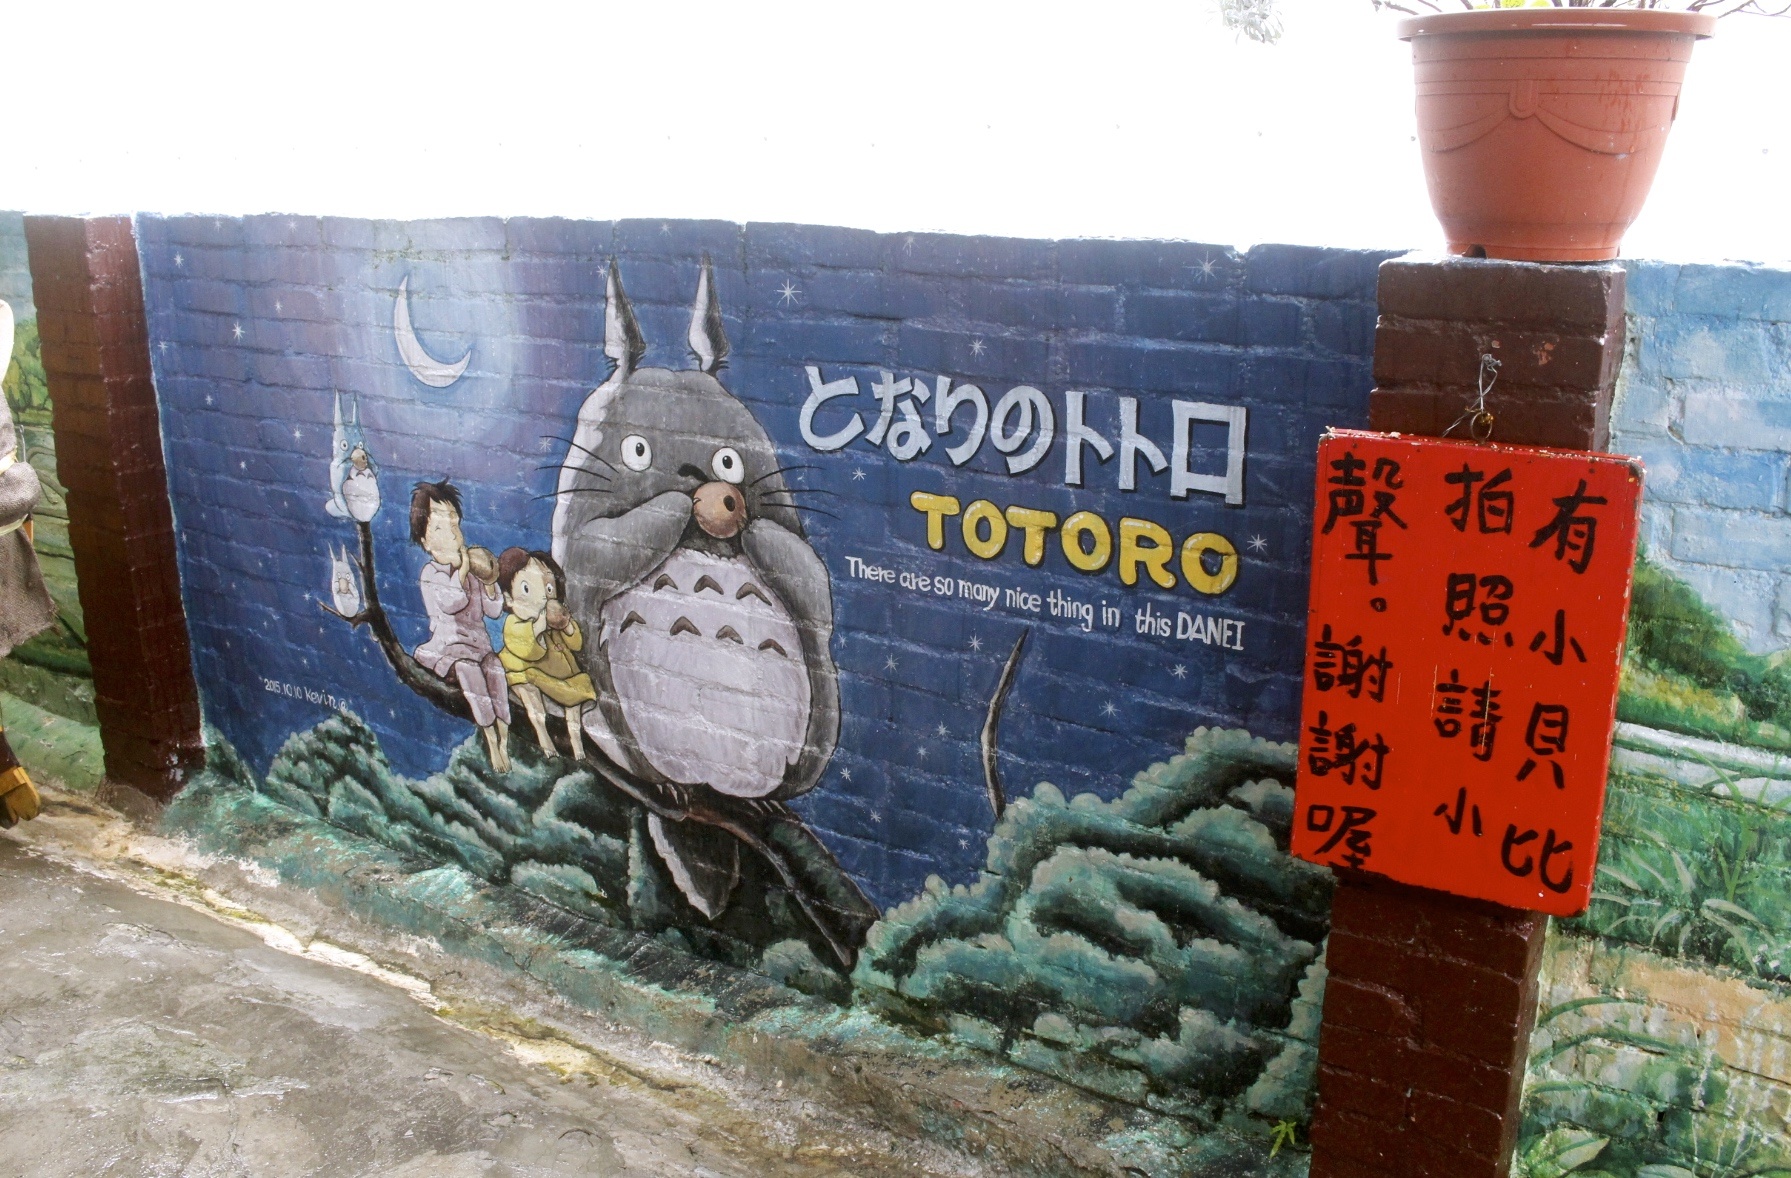 台南景點,大內龍貓公車站,彩繪牆,拍照點